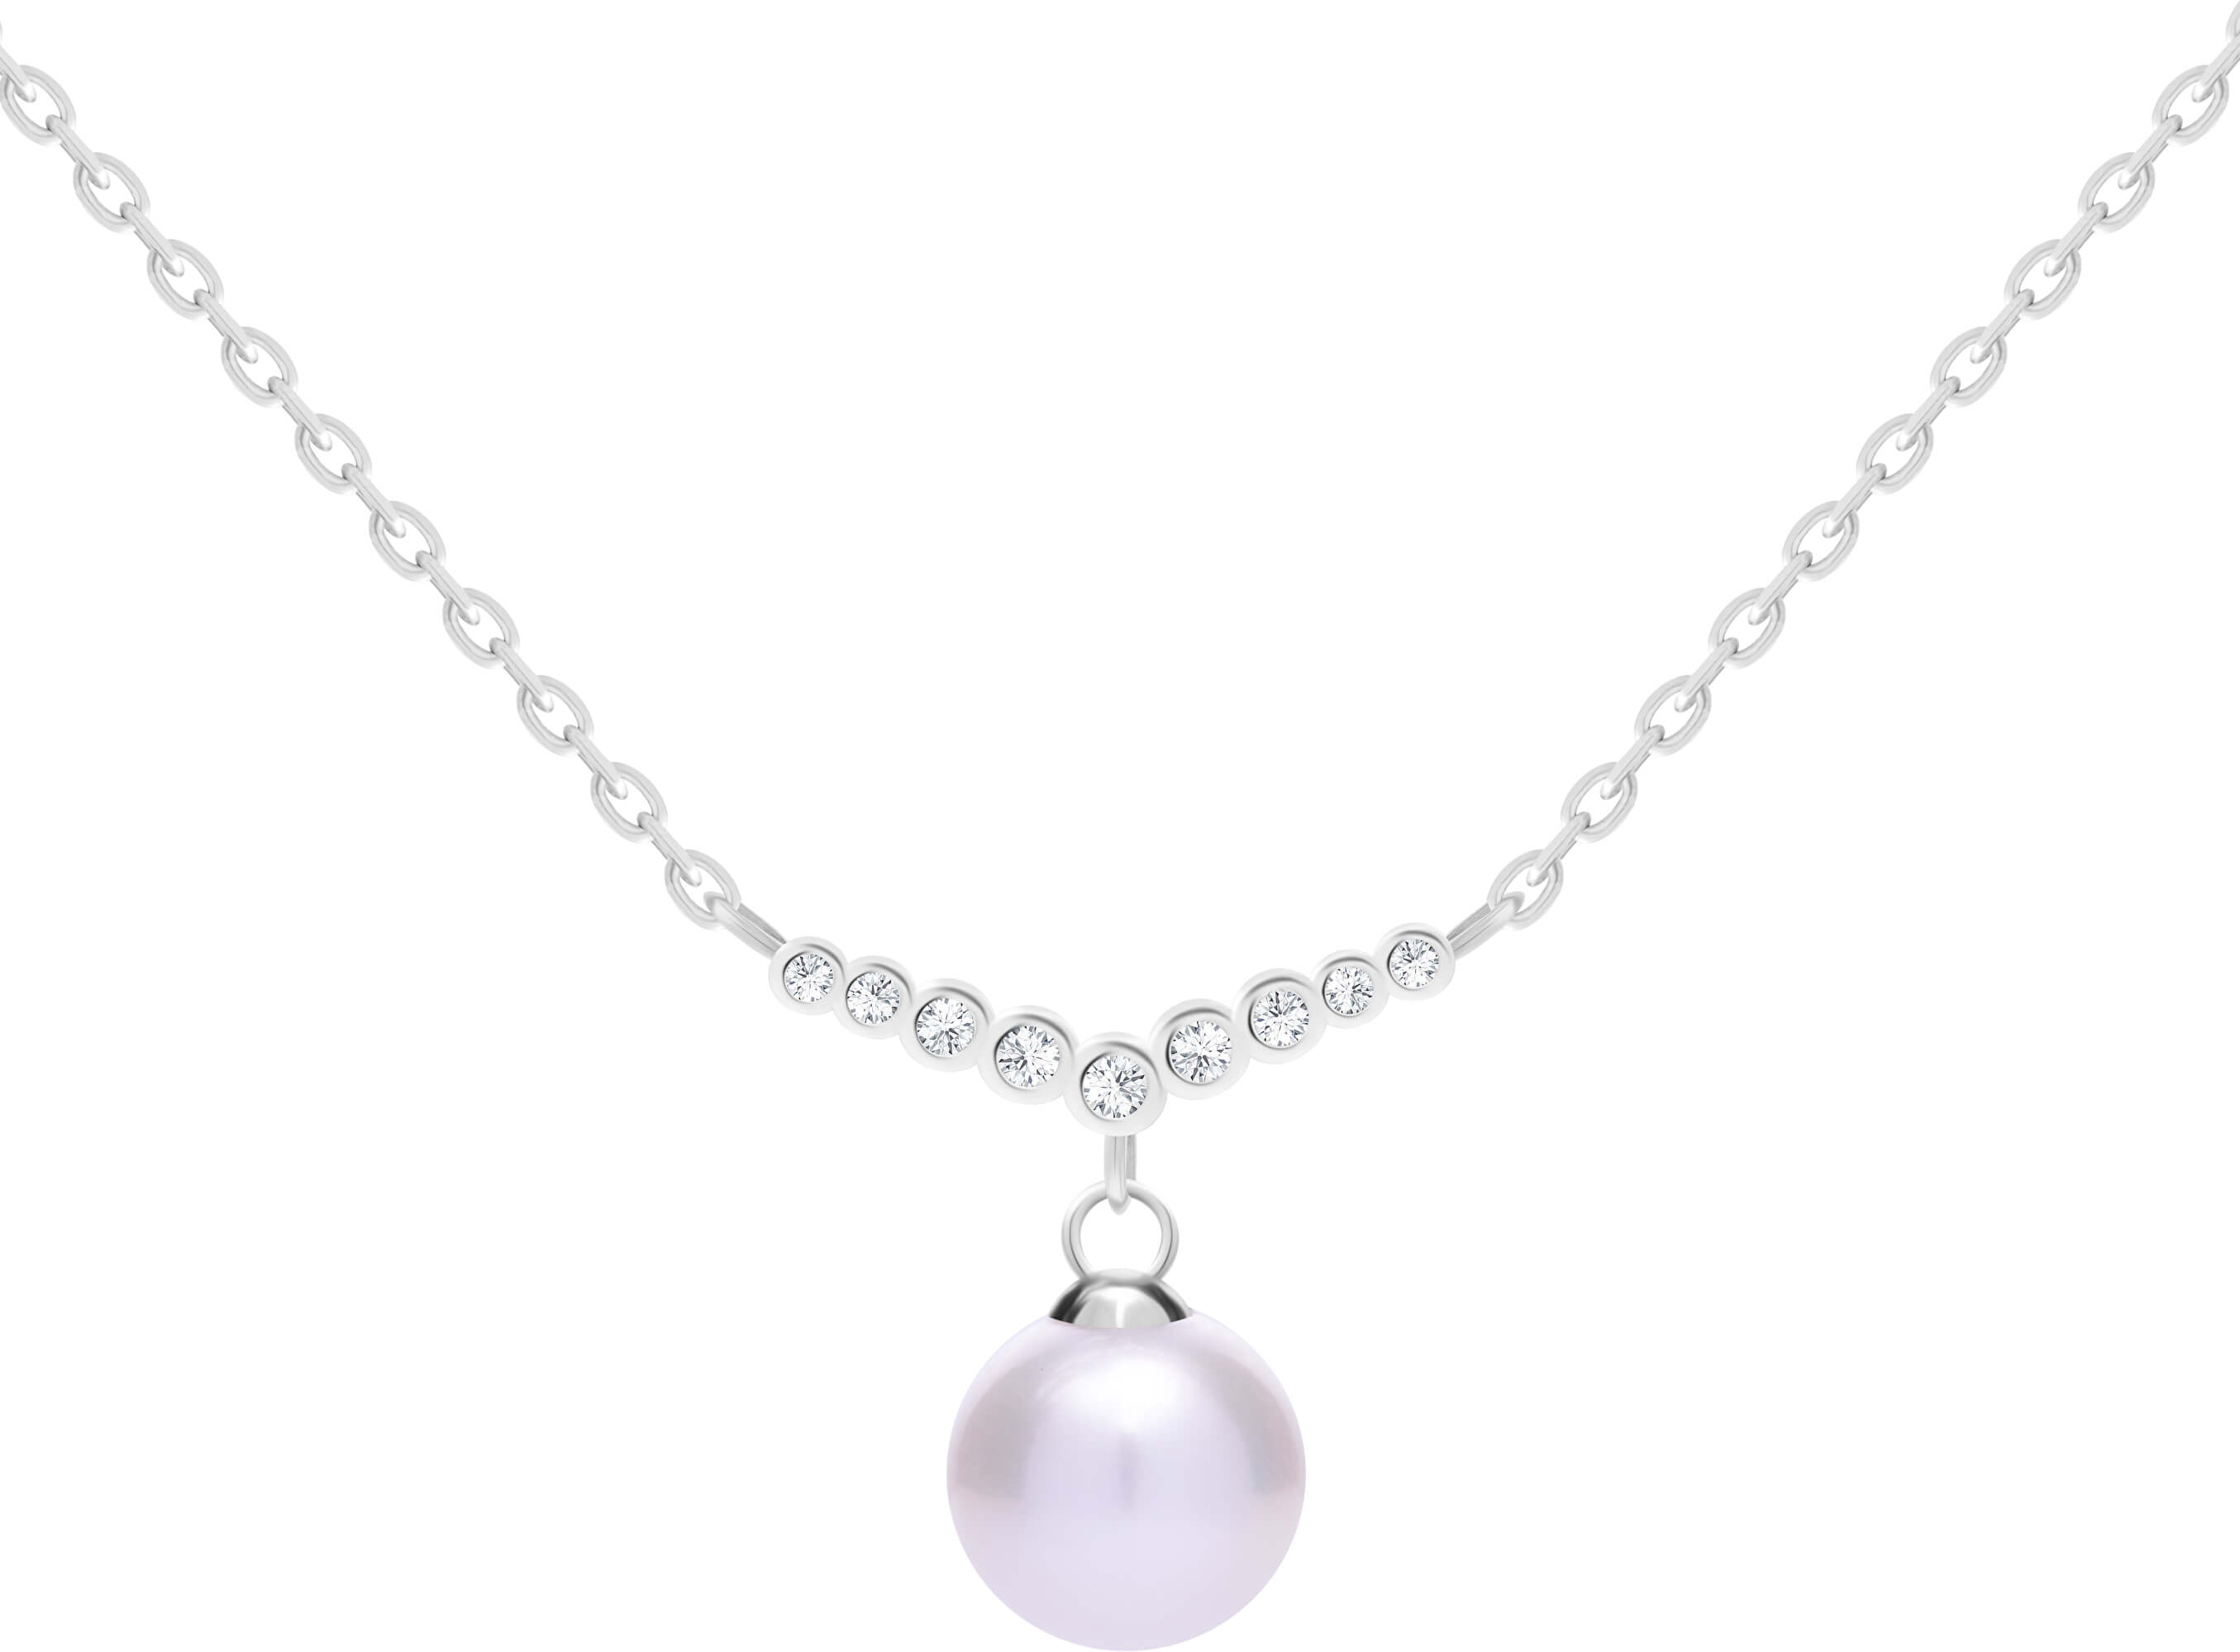 Preciosa Něžný stříbrný náhrdelník s pravou perlou Samoa 5308 00